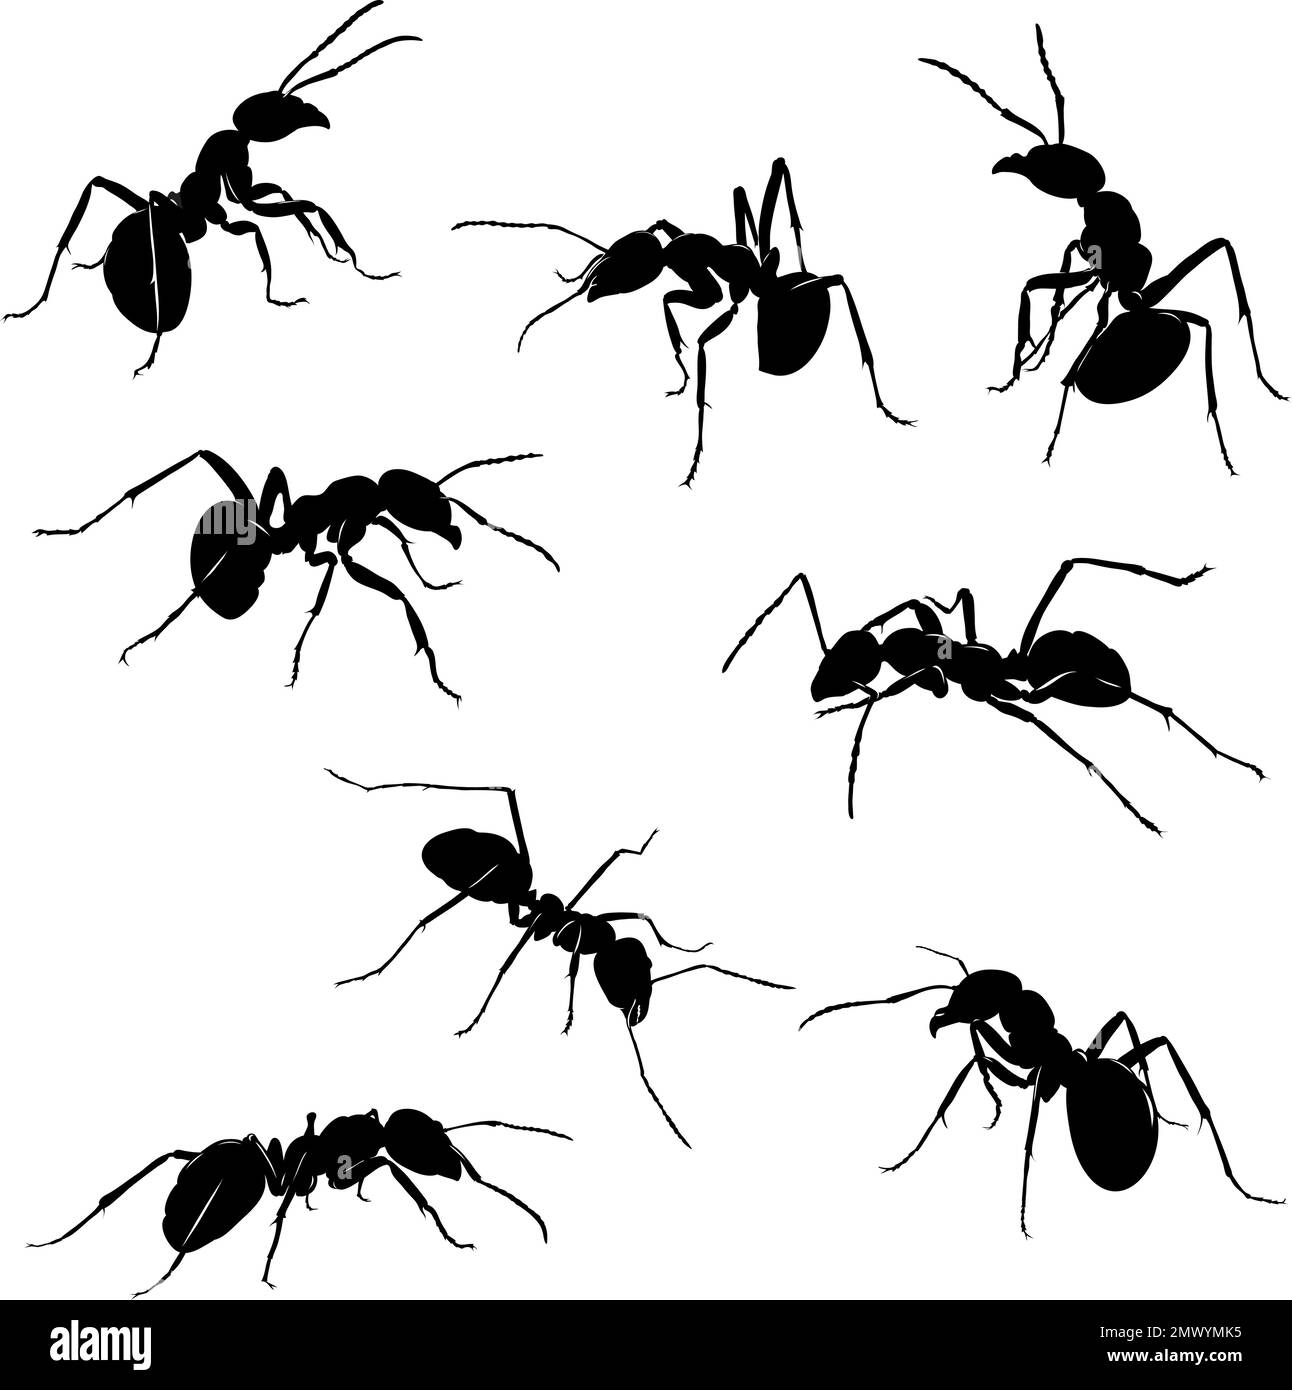 hormiga, insecto, varias poses, movimientos y ángulos de figuras, negro, color, patrón, dibujo, silueta, ojos, diseño, símbolo, imagen, aislado Ilustración del Vector